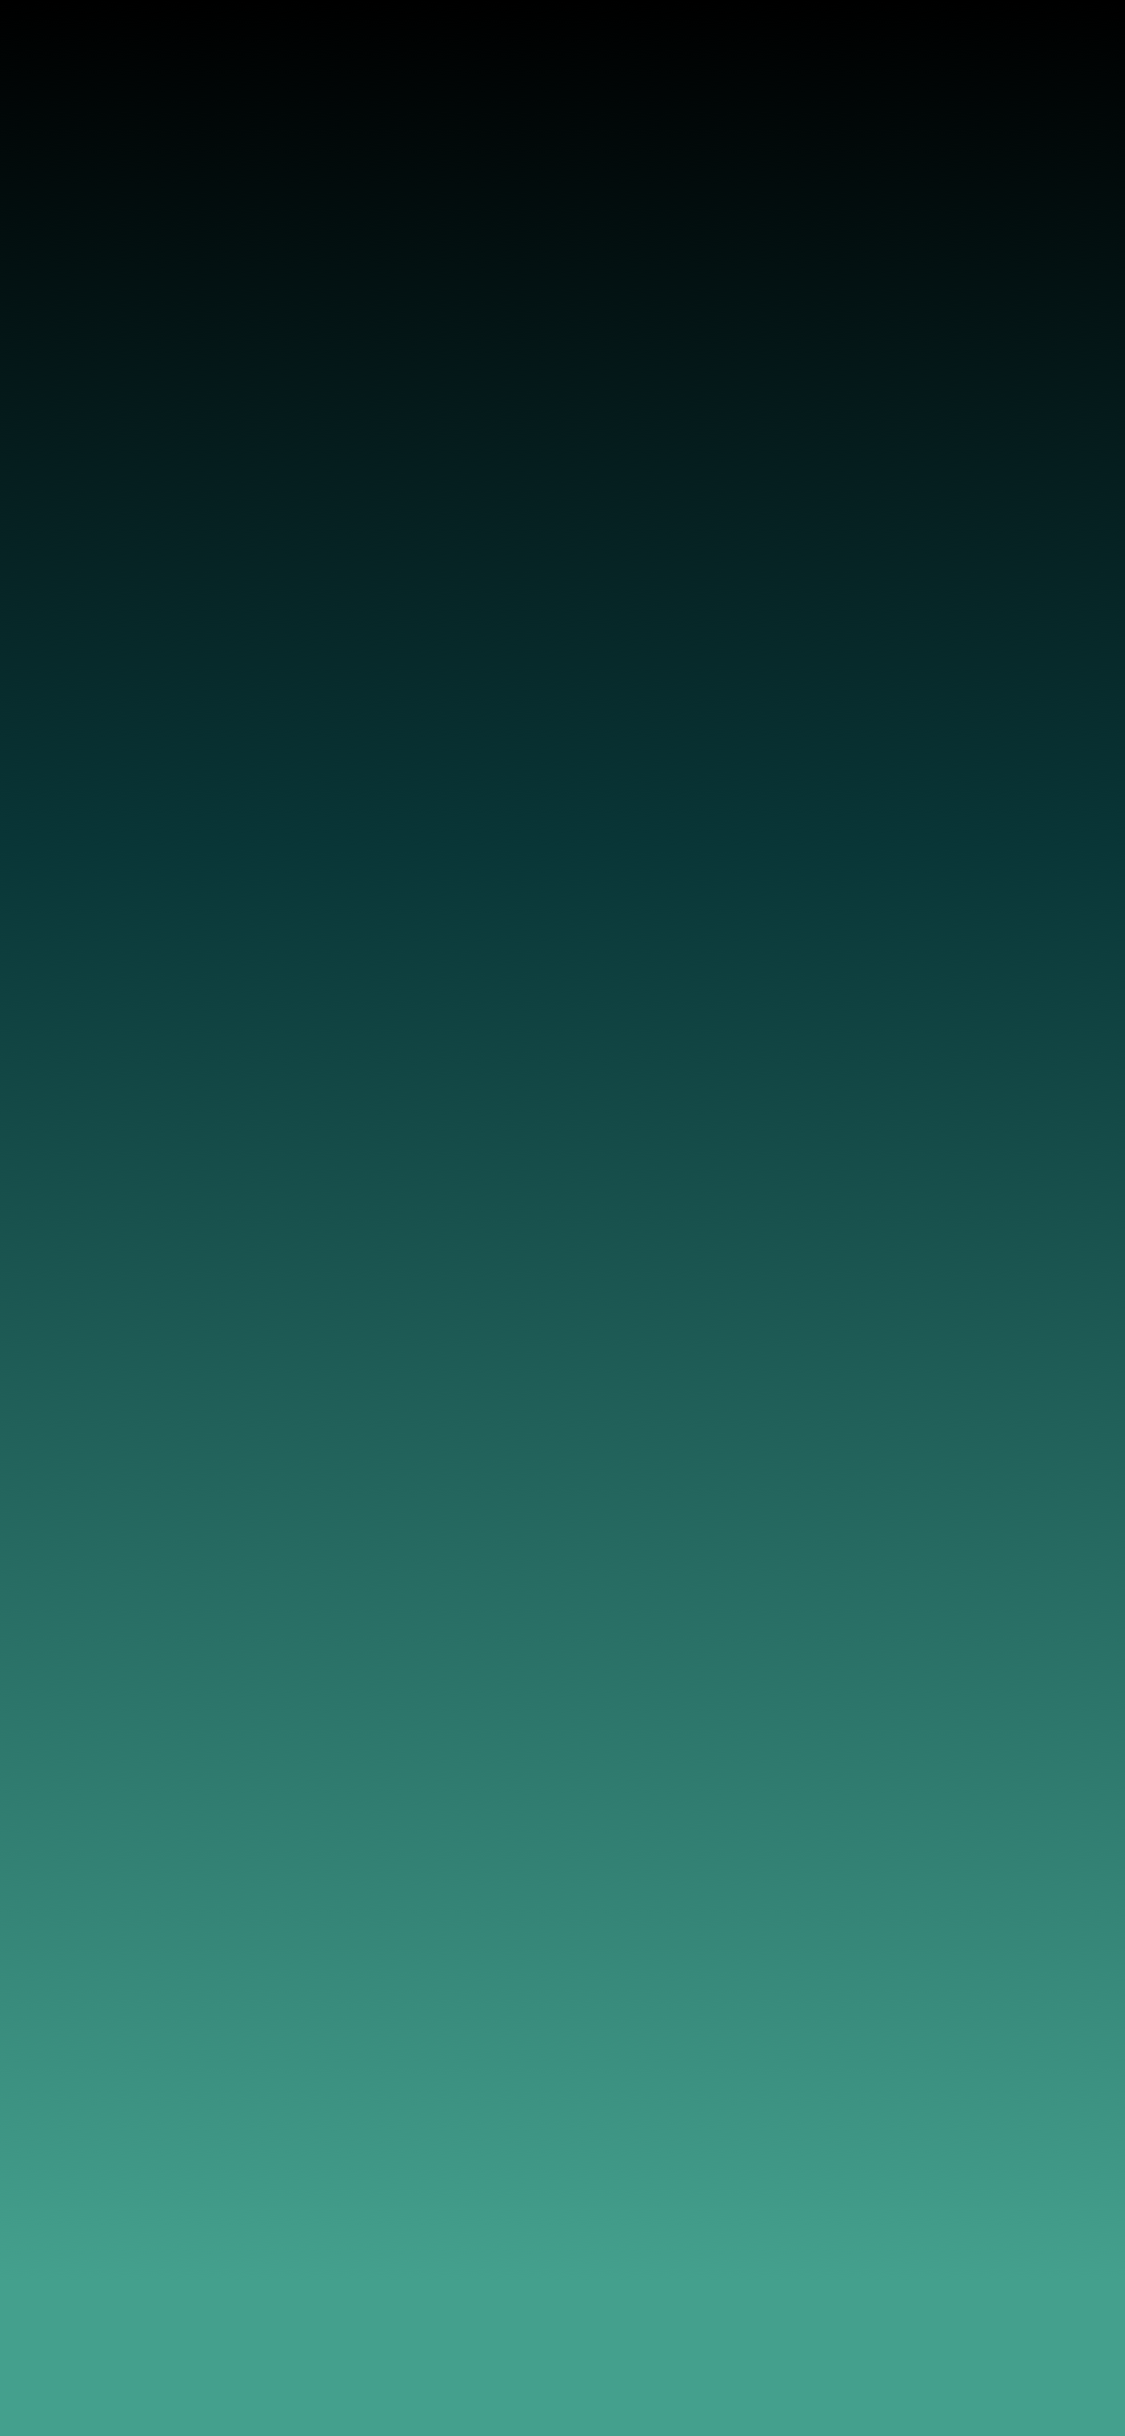 gradiente fondo de pantalla para iphone,verde,azul,agua,turquesa,verde azulado